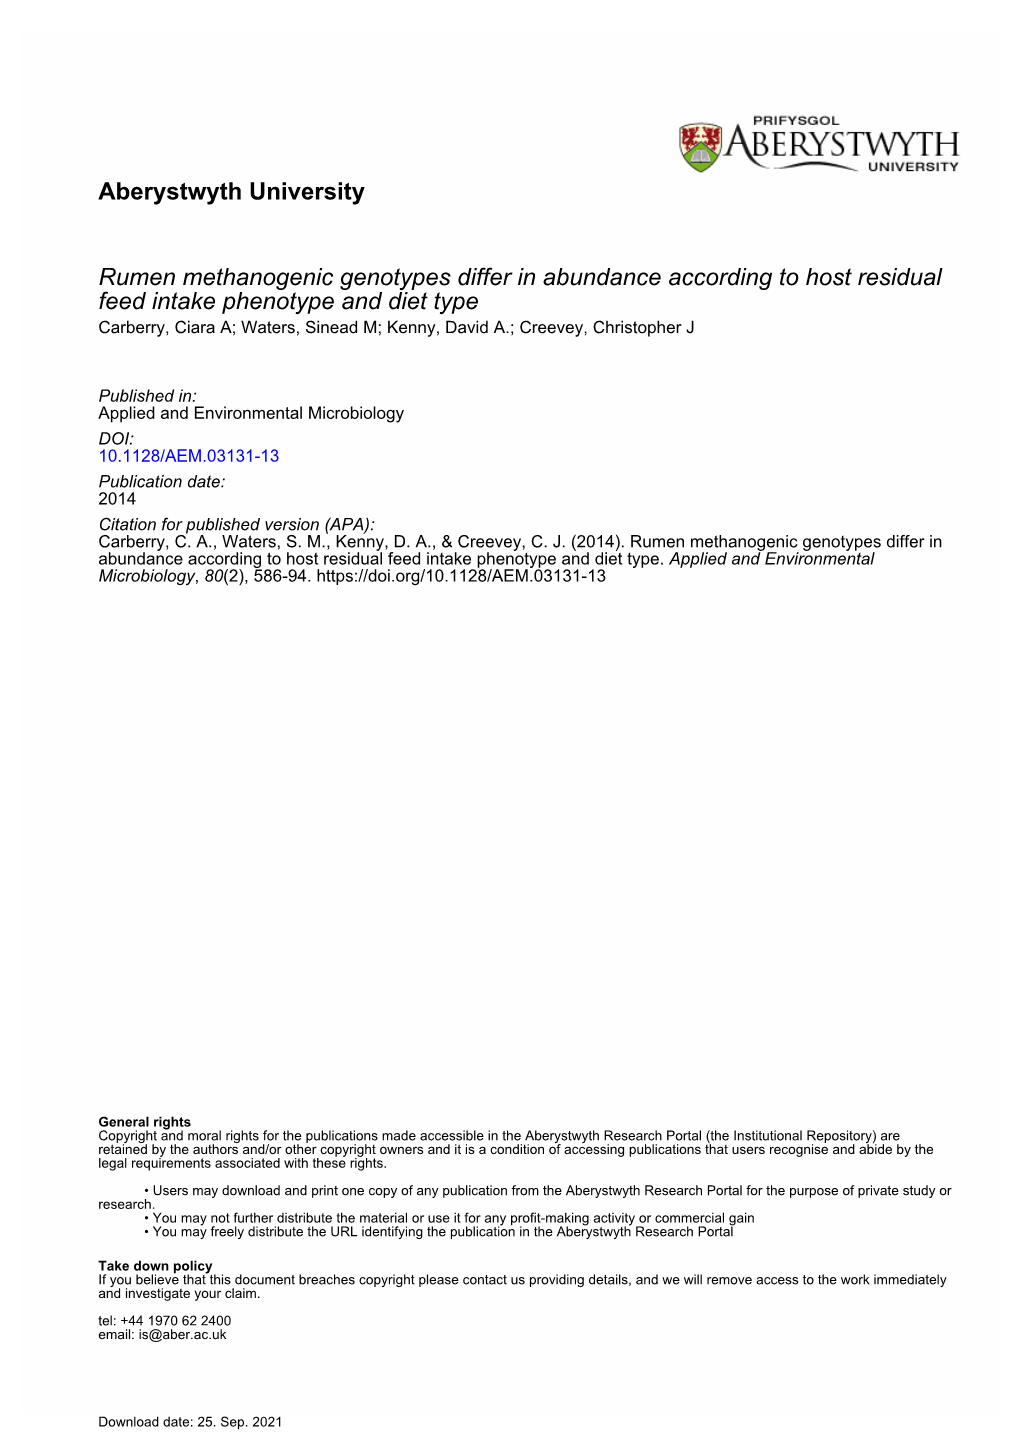 Aberystwyth University Rumen Methanogenic Genotypes